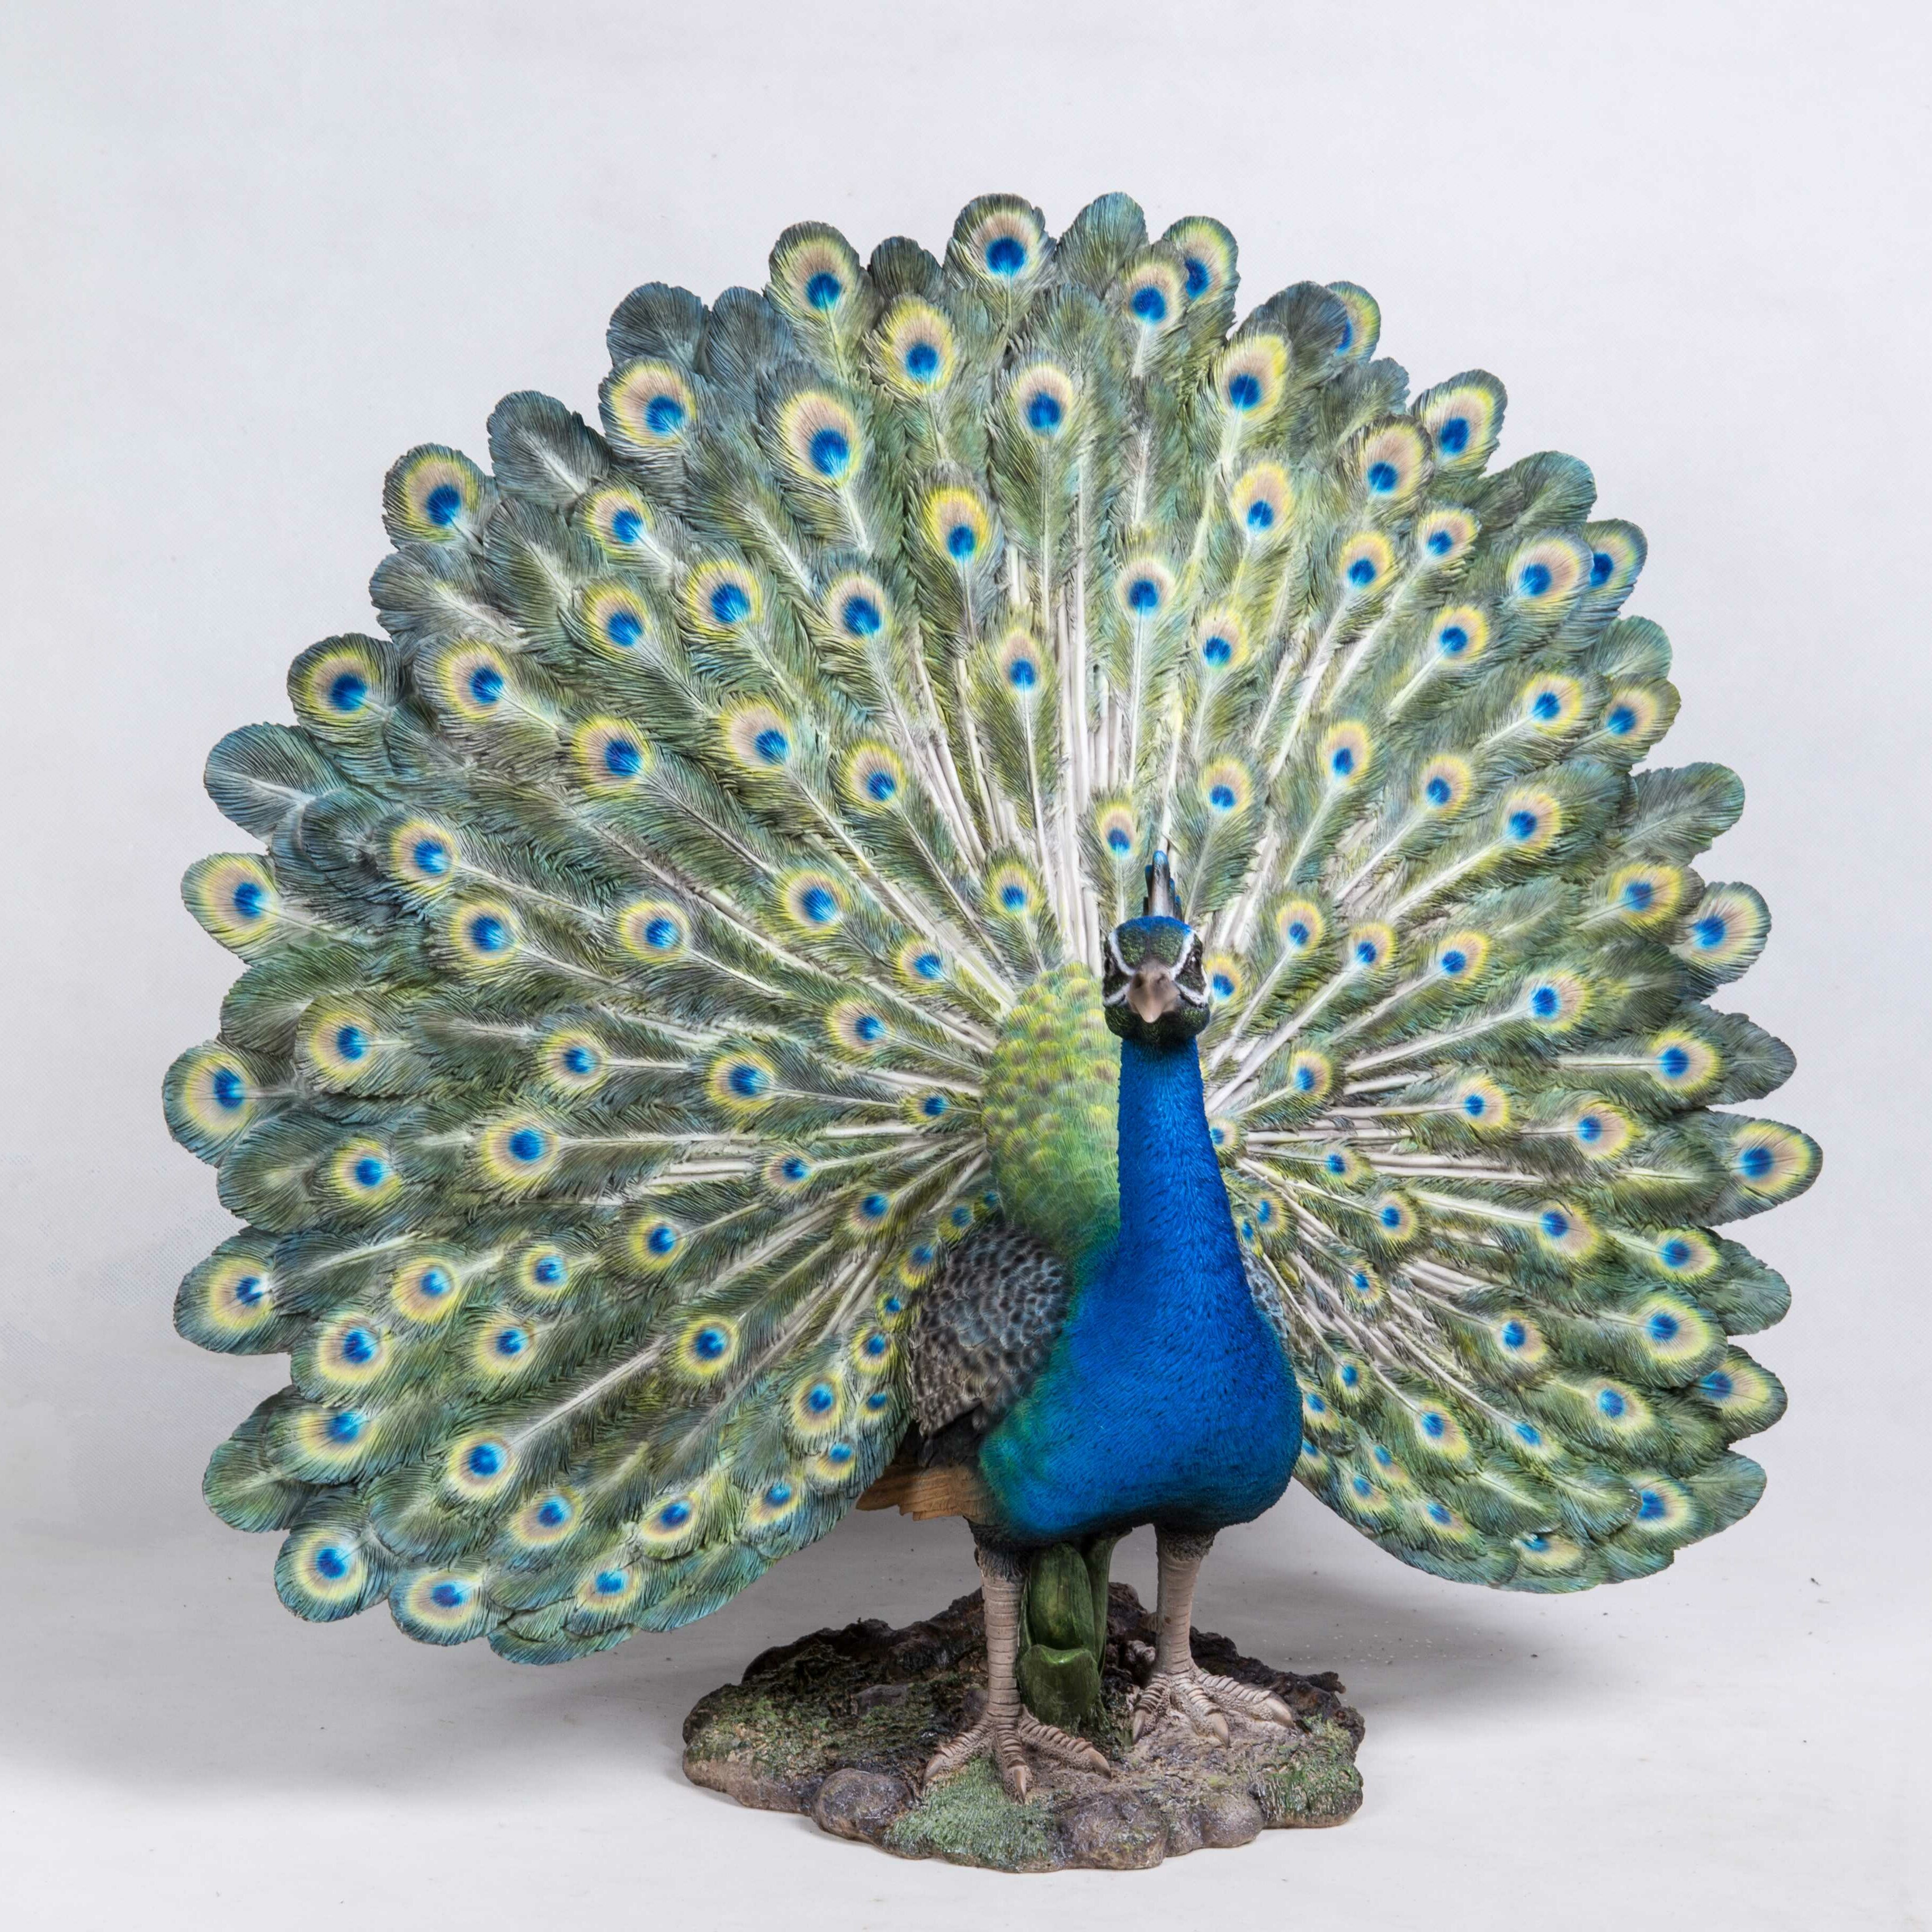 Ts penny peacock